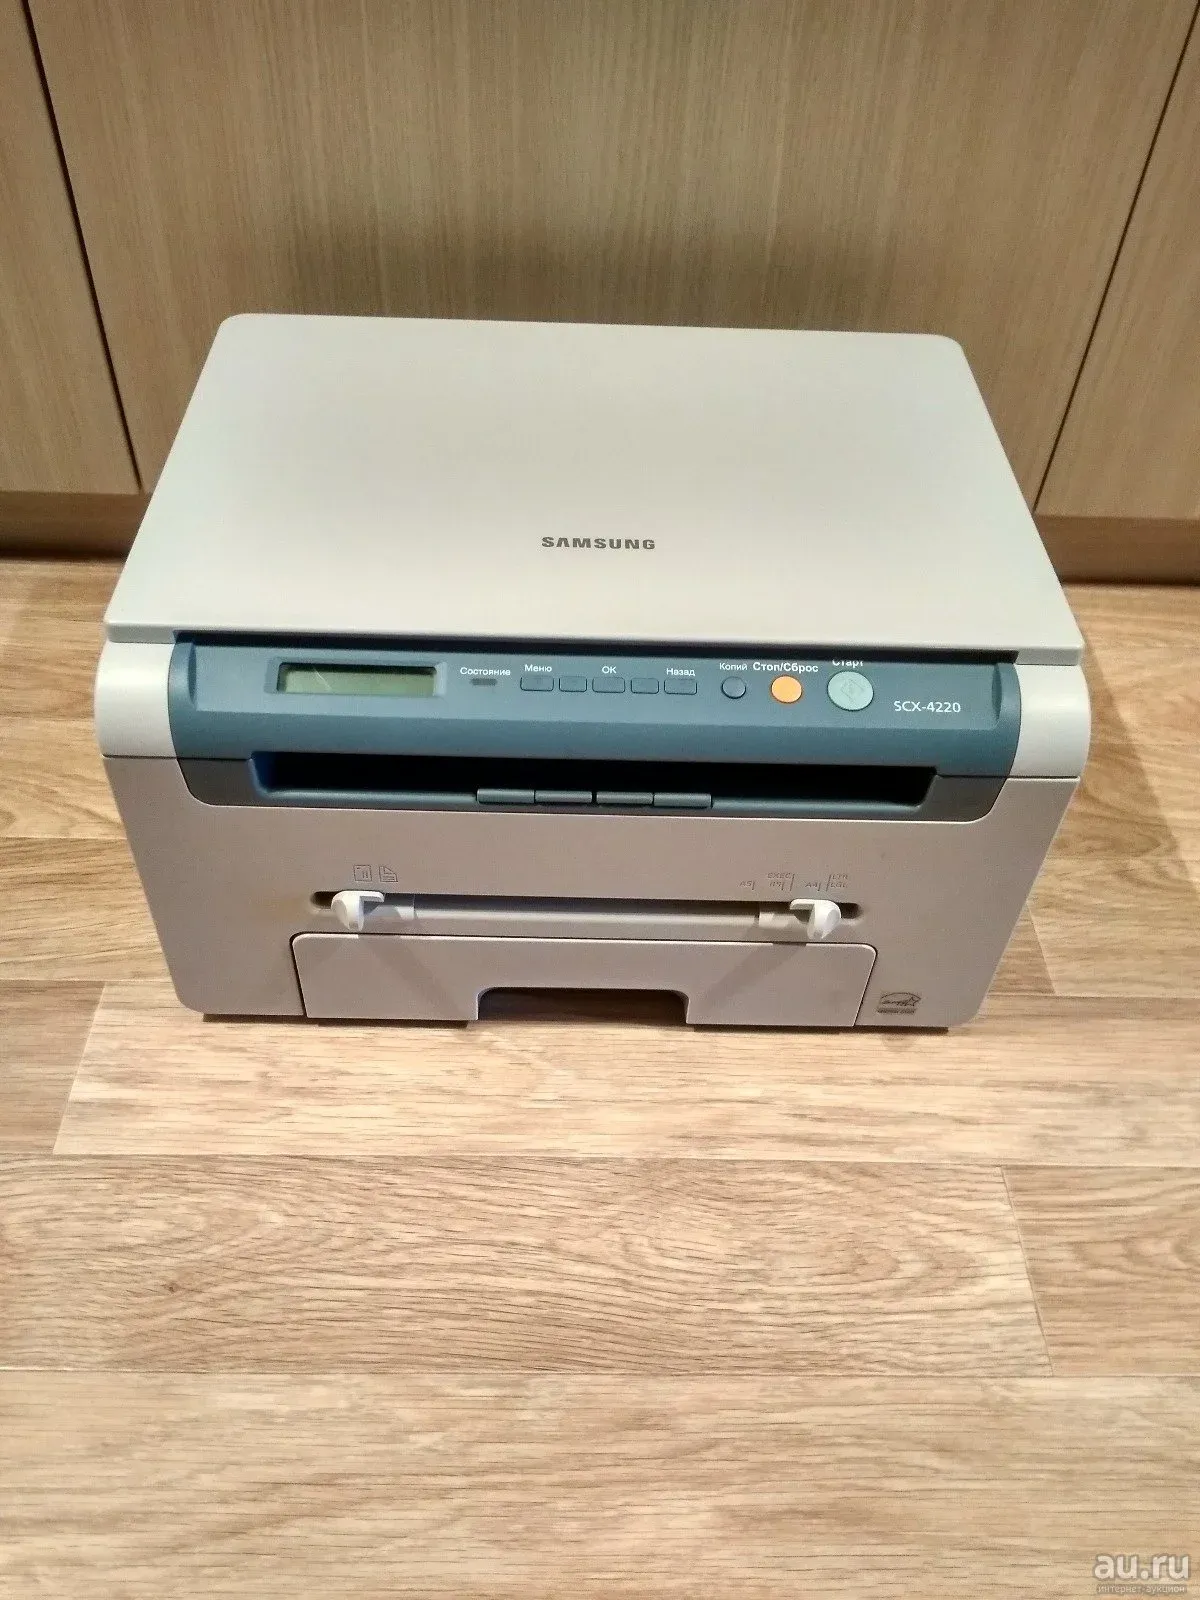 Принтер Samsung SCX-4220. Самсунг 4220 принтер. Samsung SCX 4220. МФУ самсунг SCX 4220. Samsung 4220 windows 10